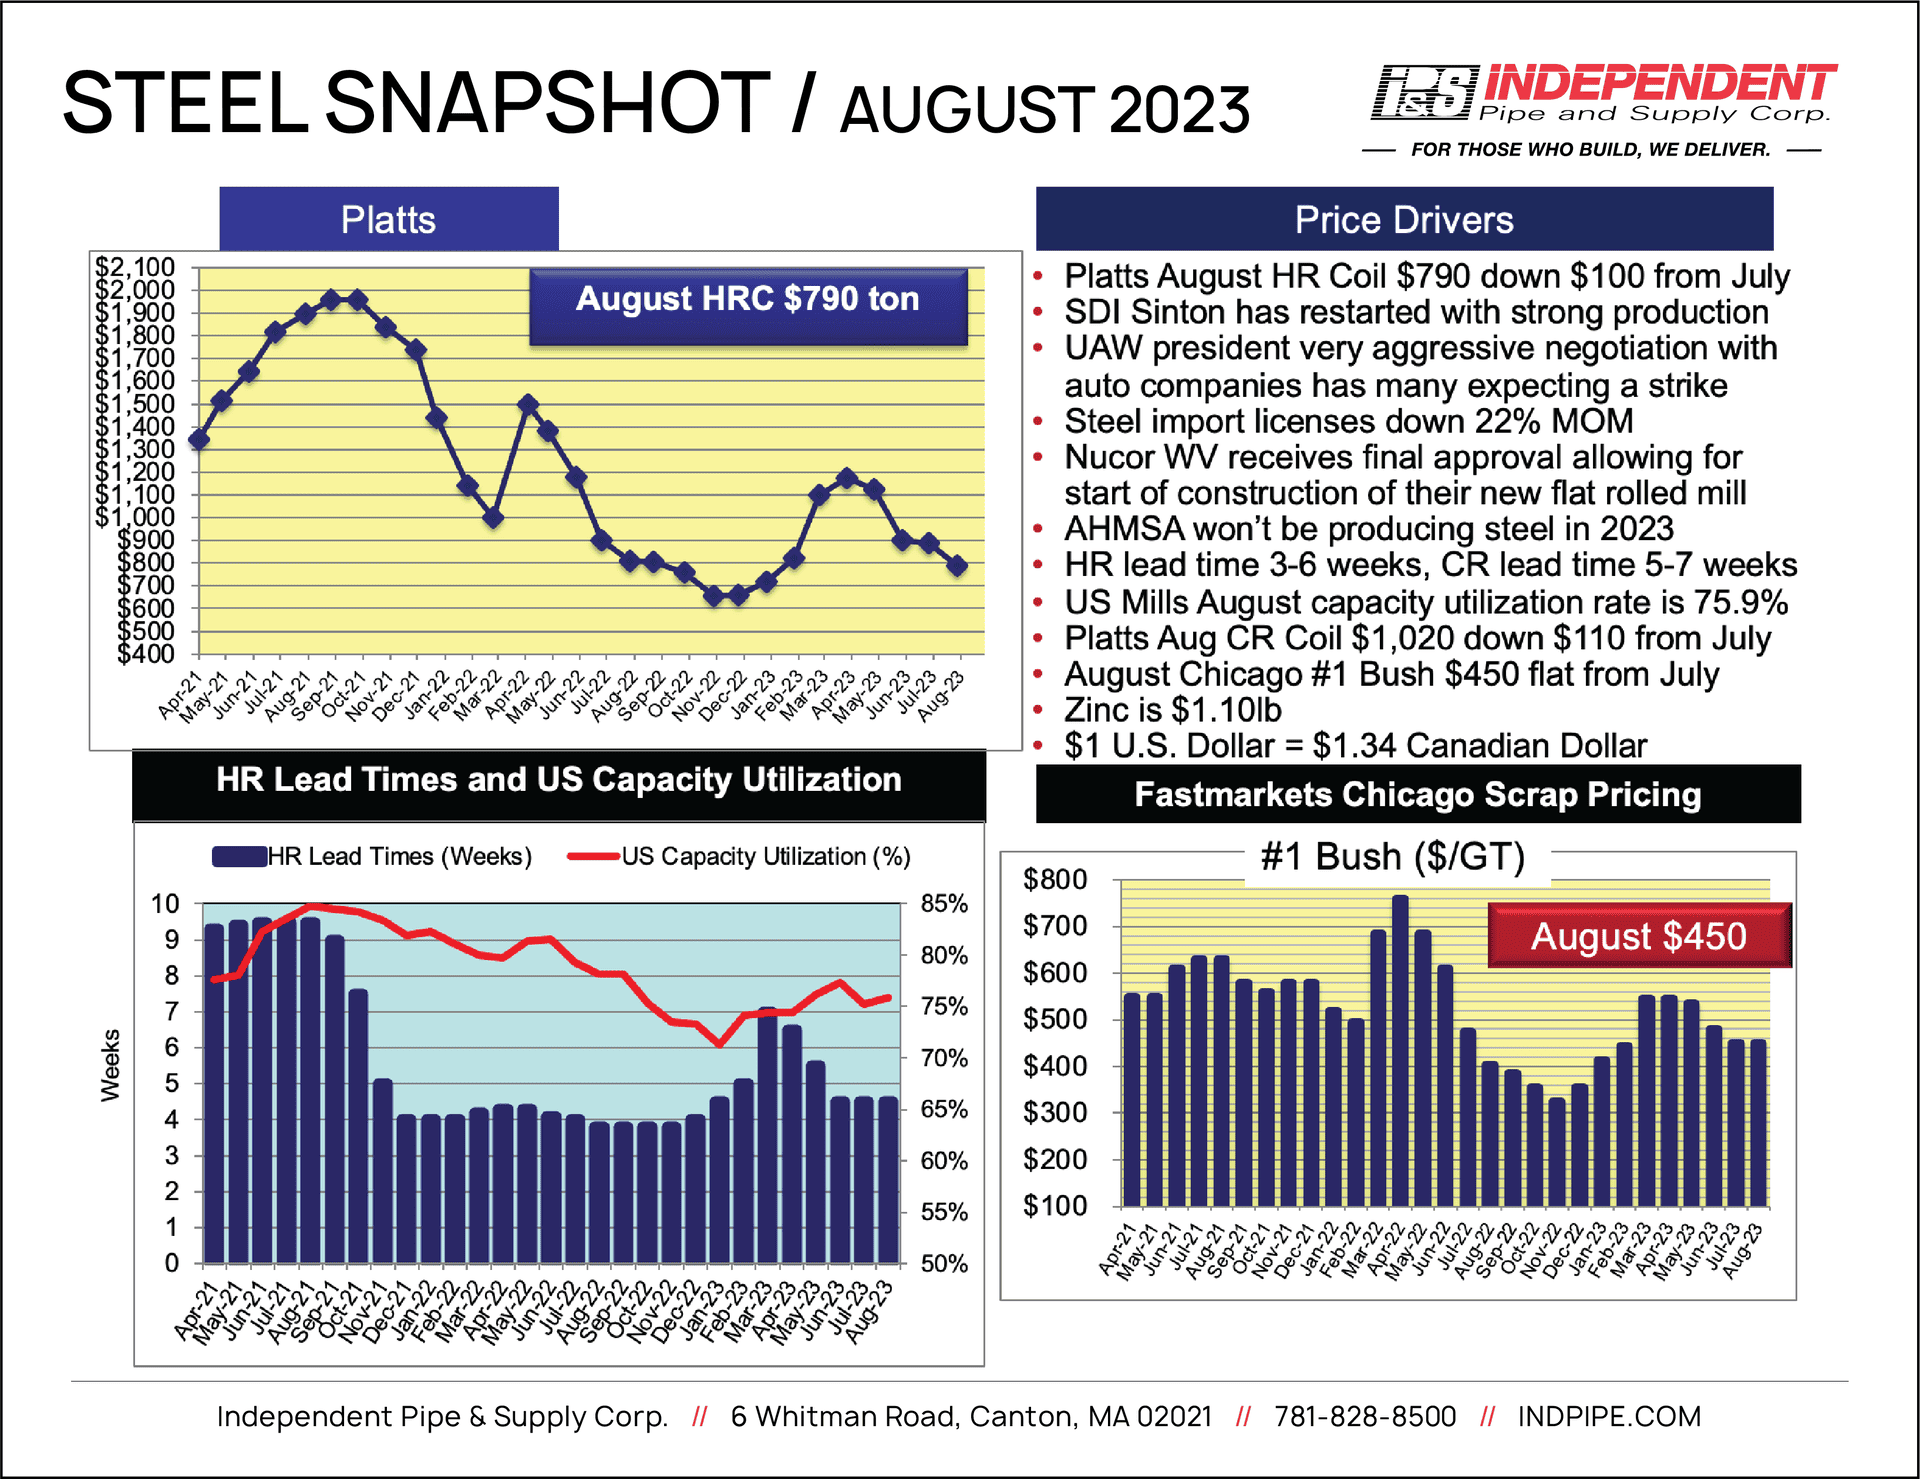 IPS SteelSnapshot August 2023